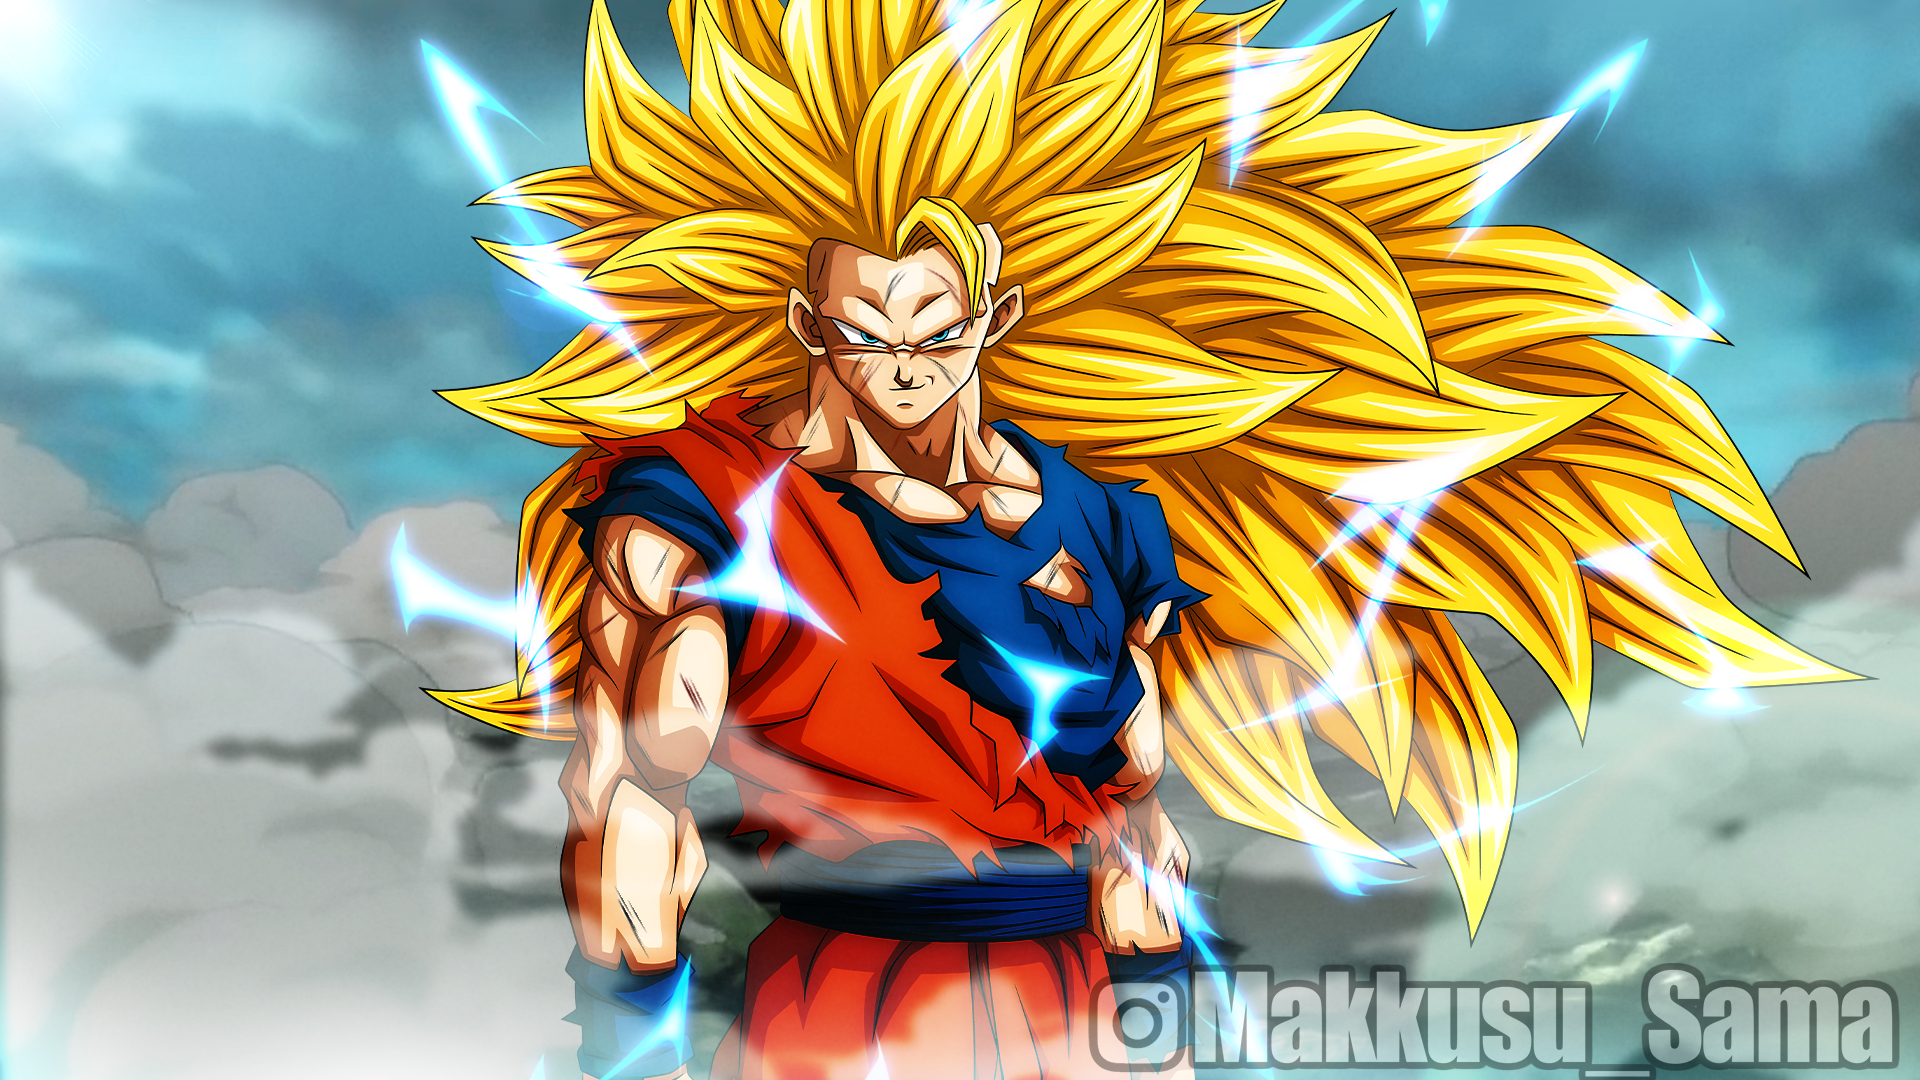 Super Saiyan 3 Goku (Ascended) by MegaforceRed on DeviantArt